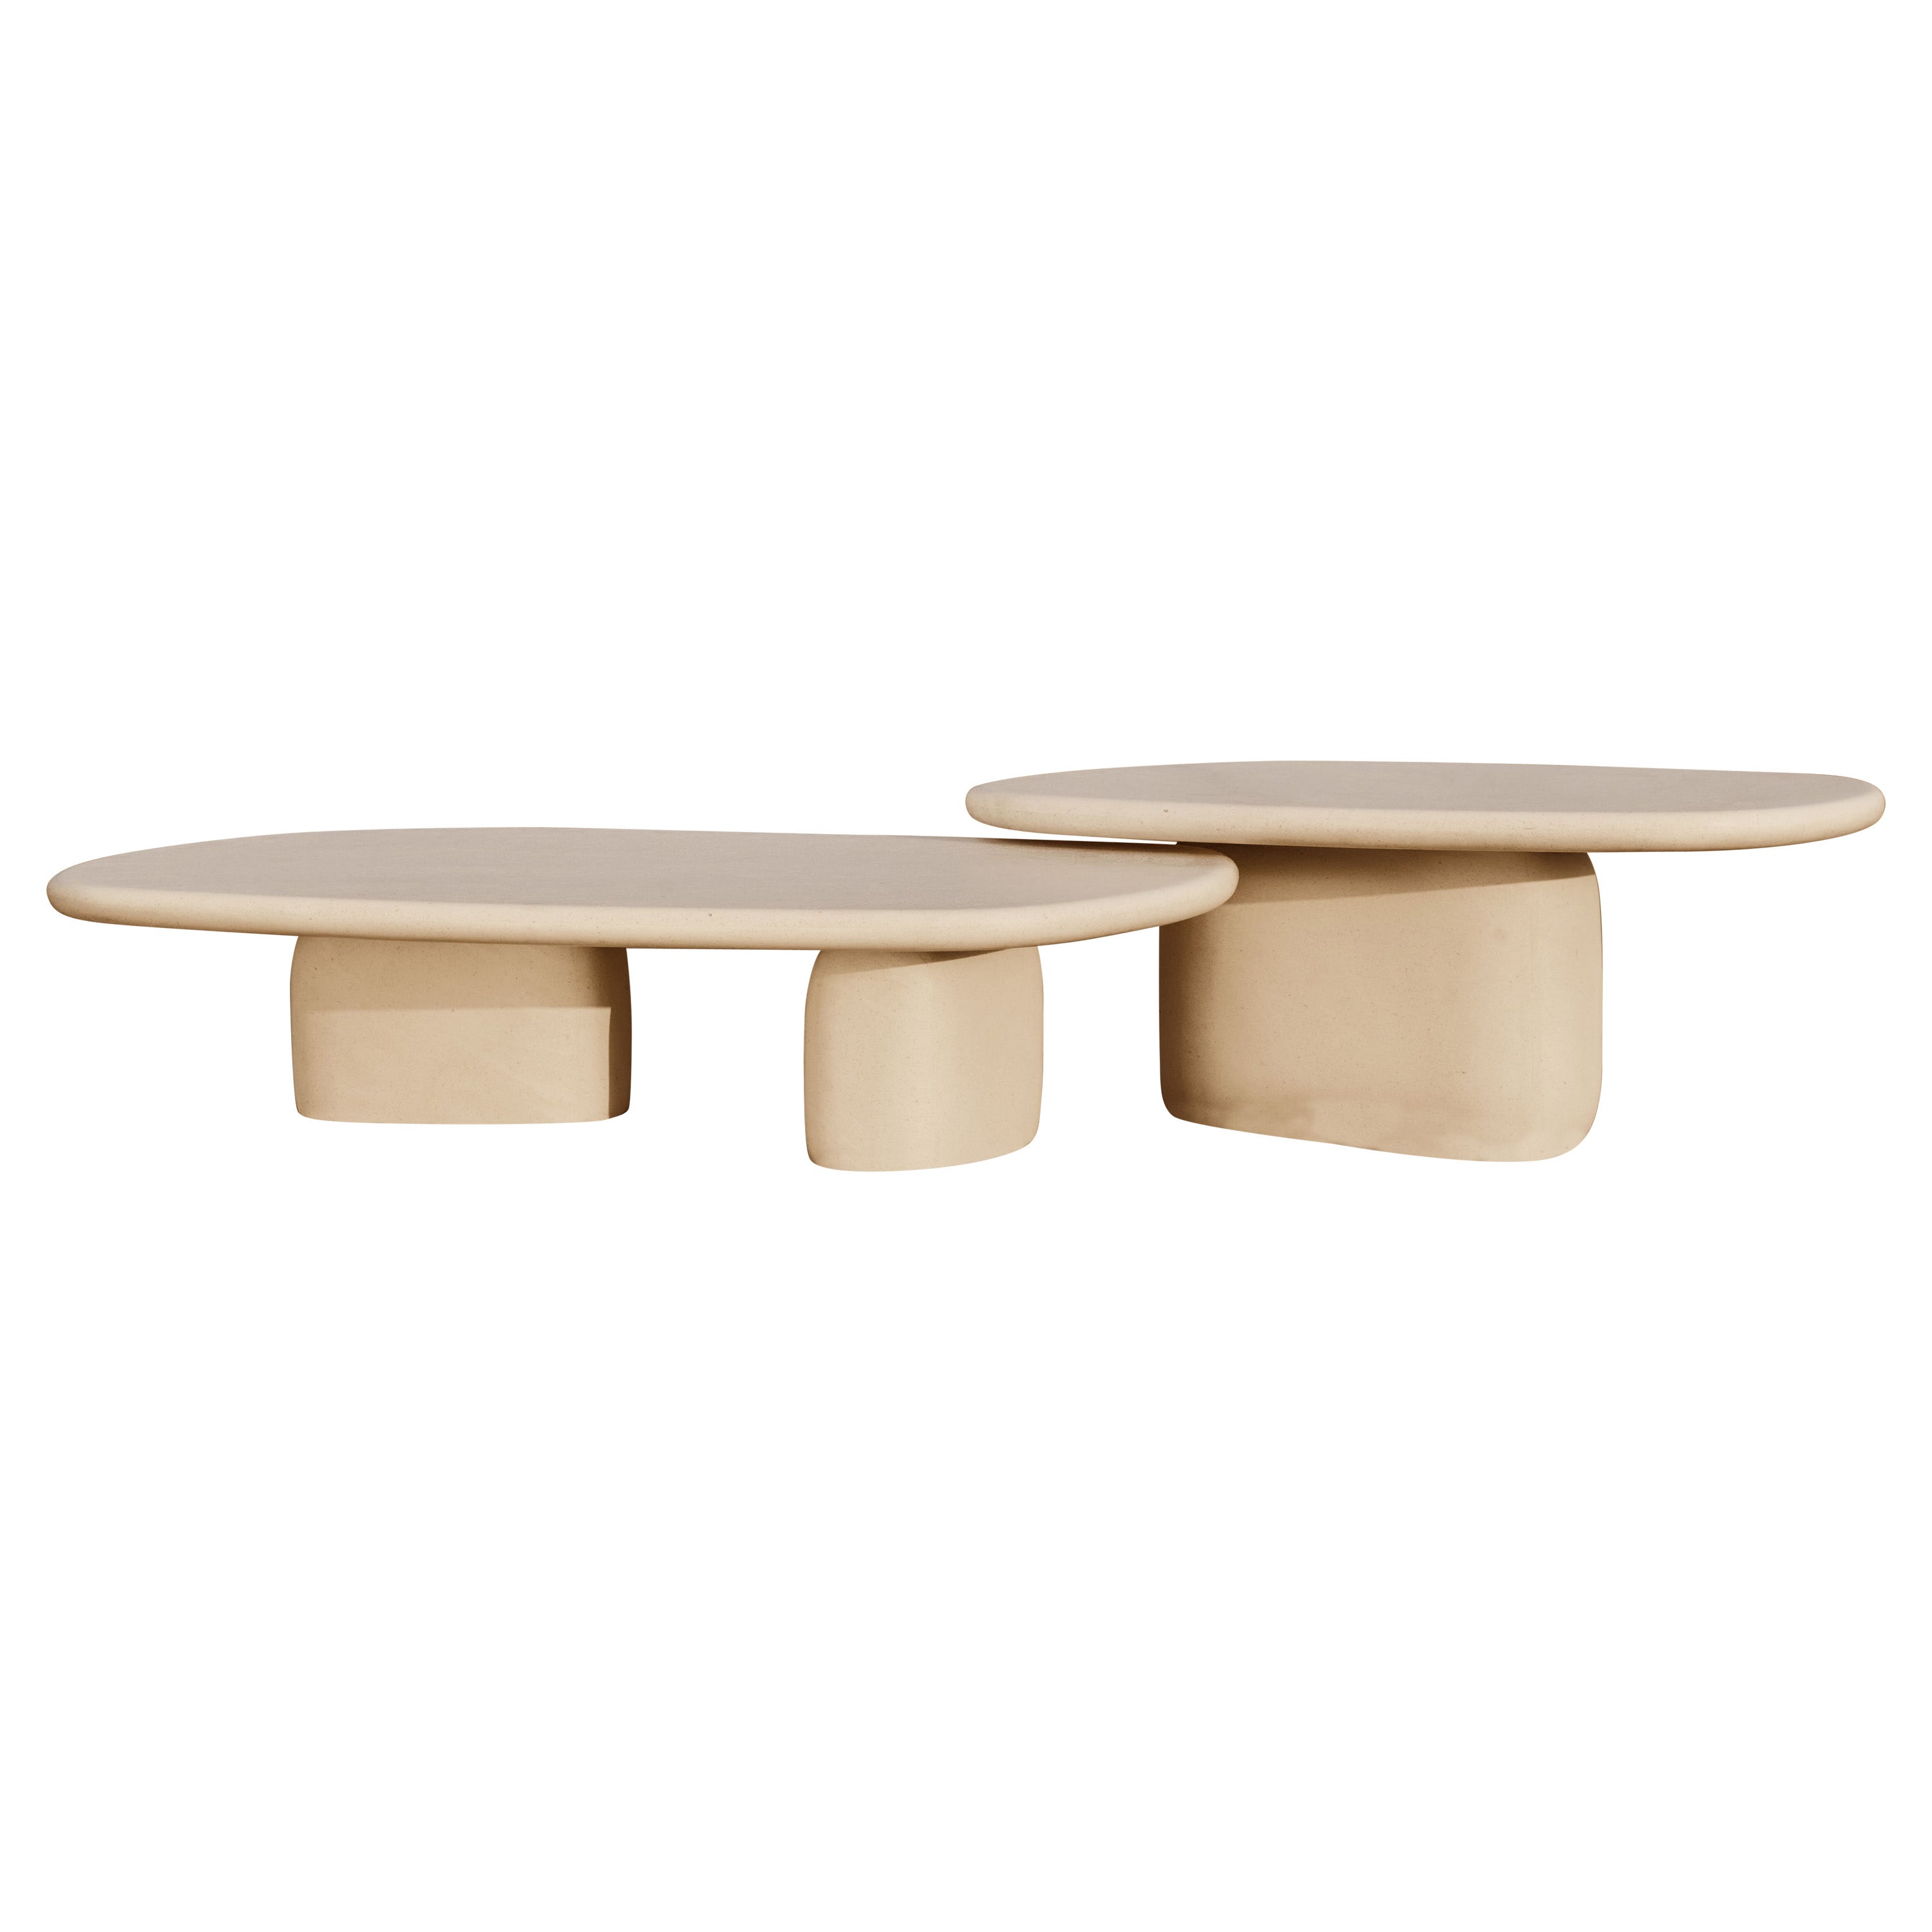 Limited Edition Hand-crafted Coffee Table Set- Kimoki & Kinoko